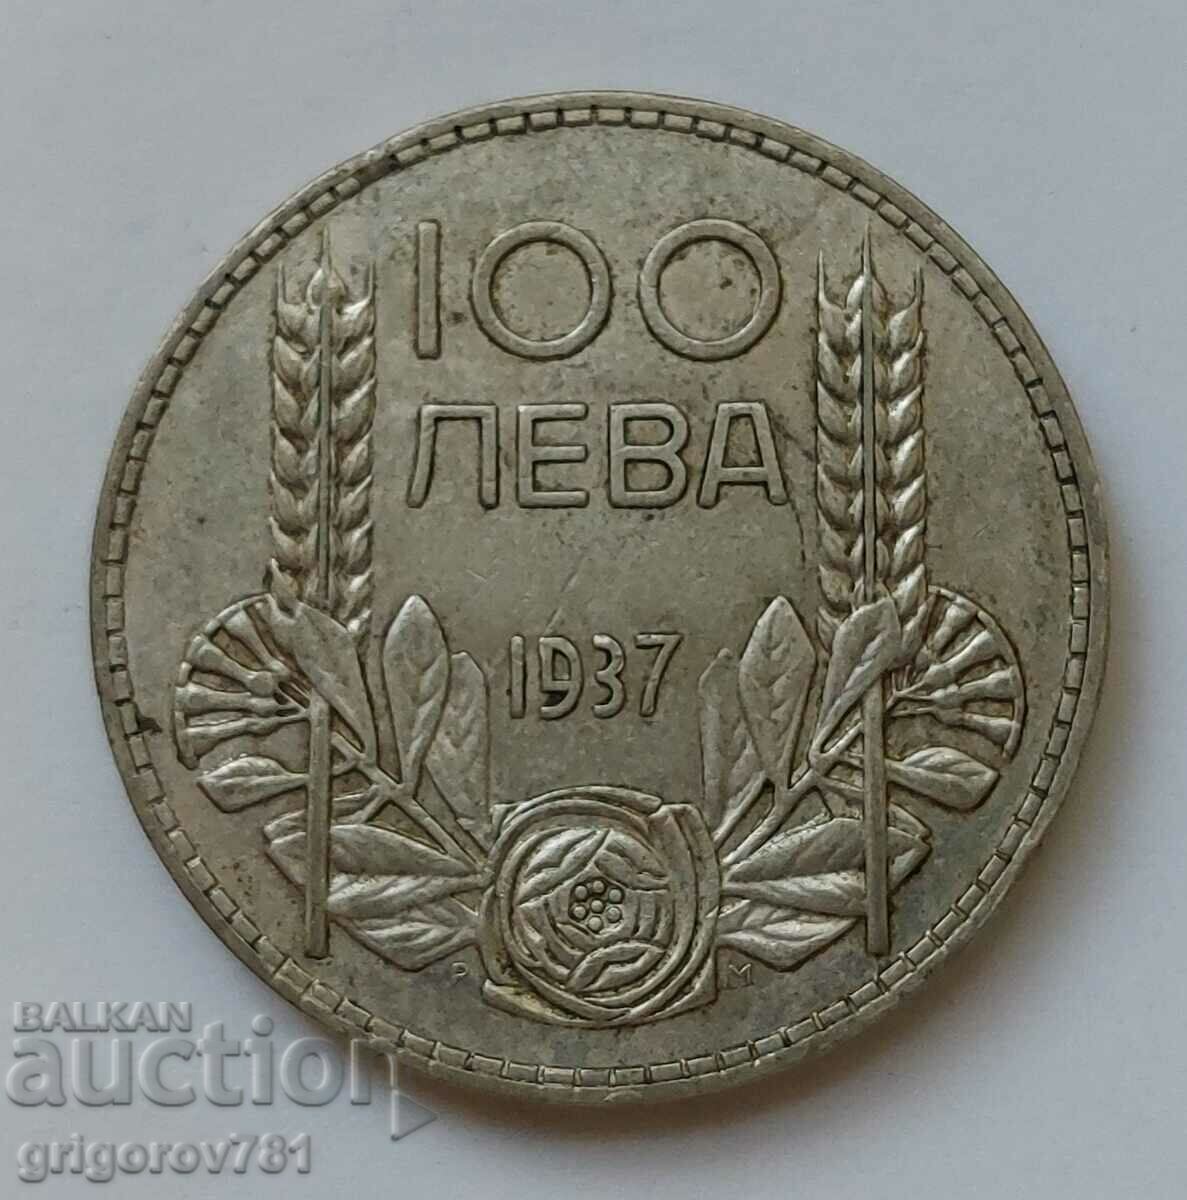 100 leva argint Bulgaria 1937 - monedă de argint #114